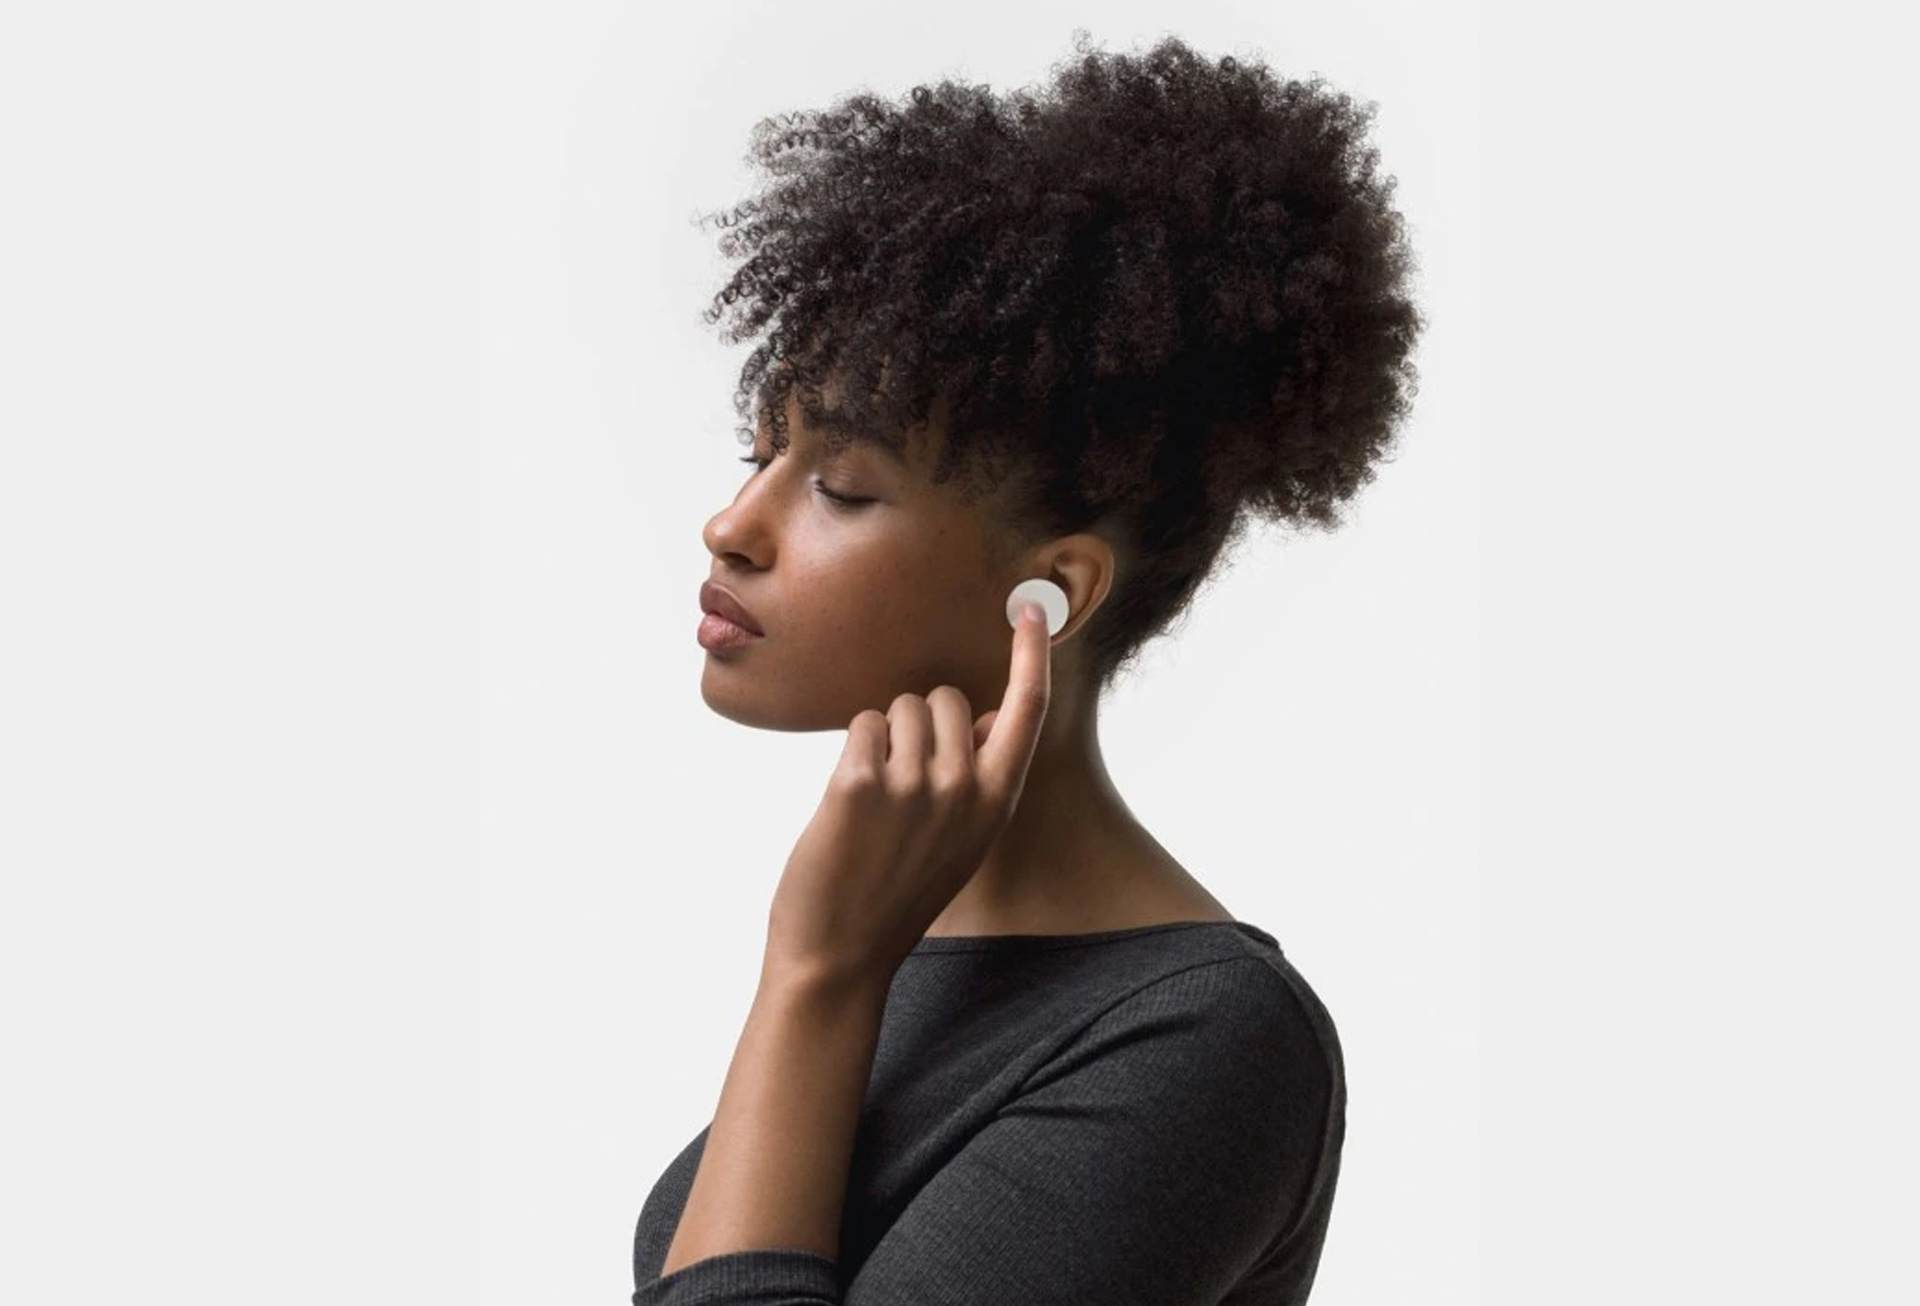 Surface Earbuds - голосовое, сенсорное и жестовое интуитивно-понятное управление